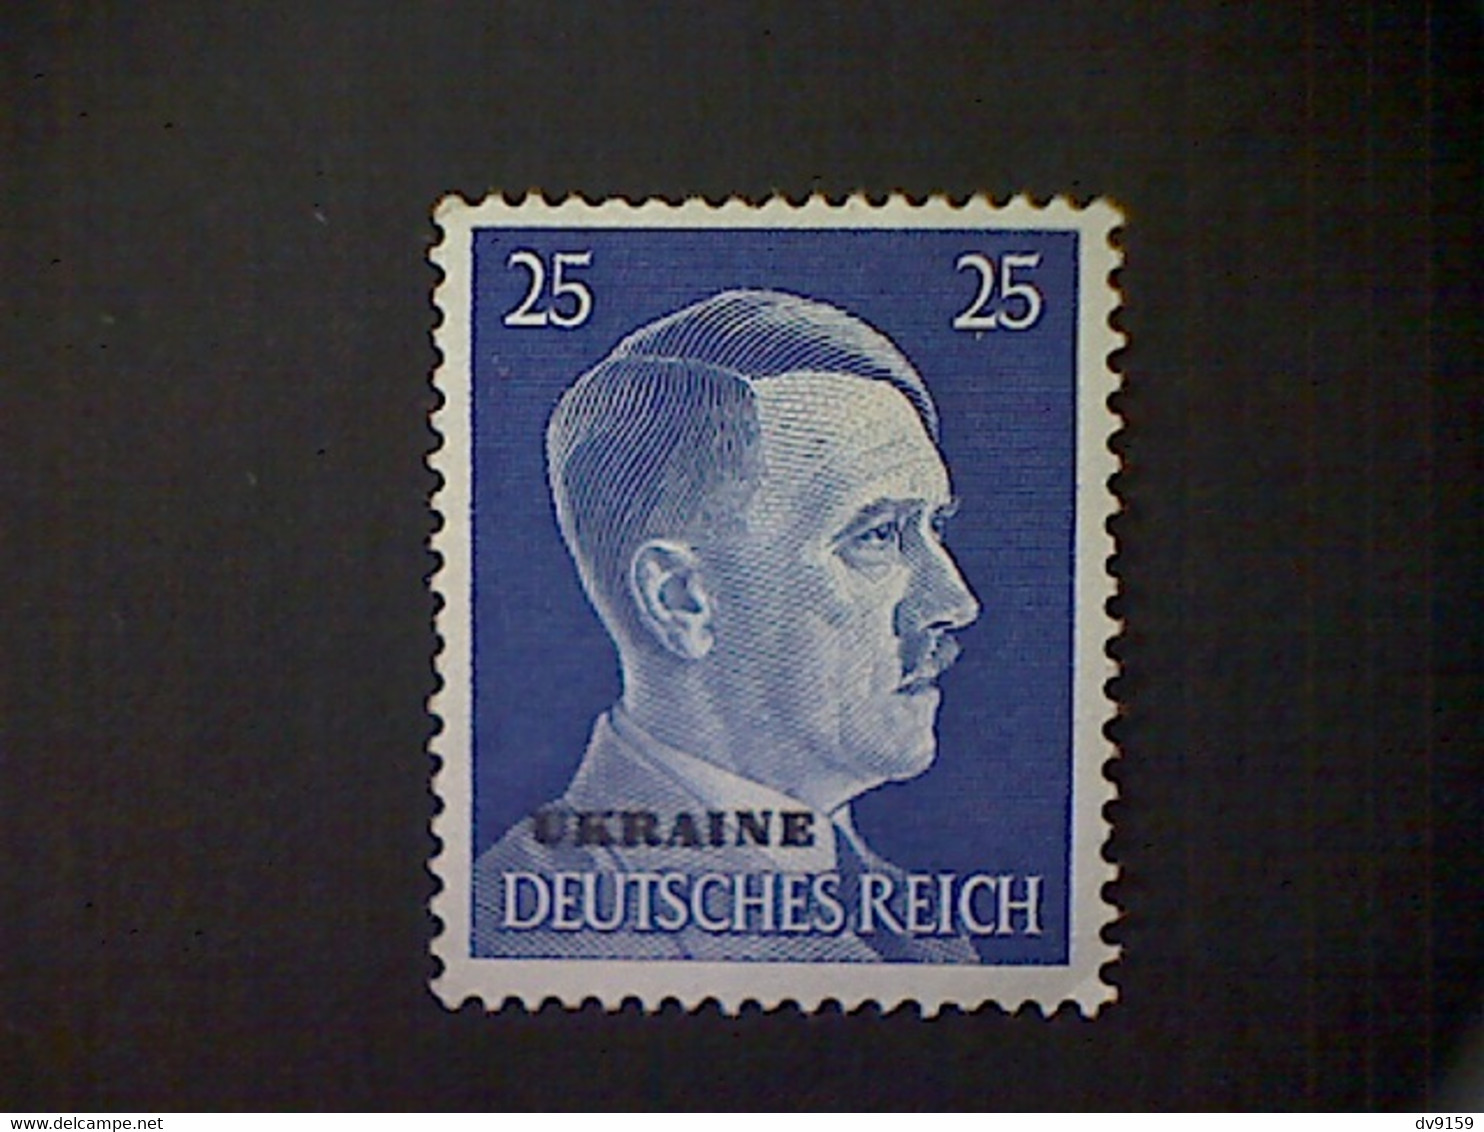 Russia, Scott #N55, Mint (*), 1941, Hitler Overprint Ukraine, 25pf, Bright Ultramarine - 1941-43 Bezetting: Duitsland